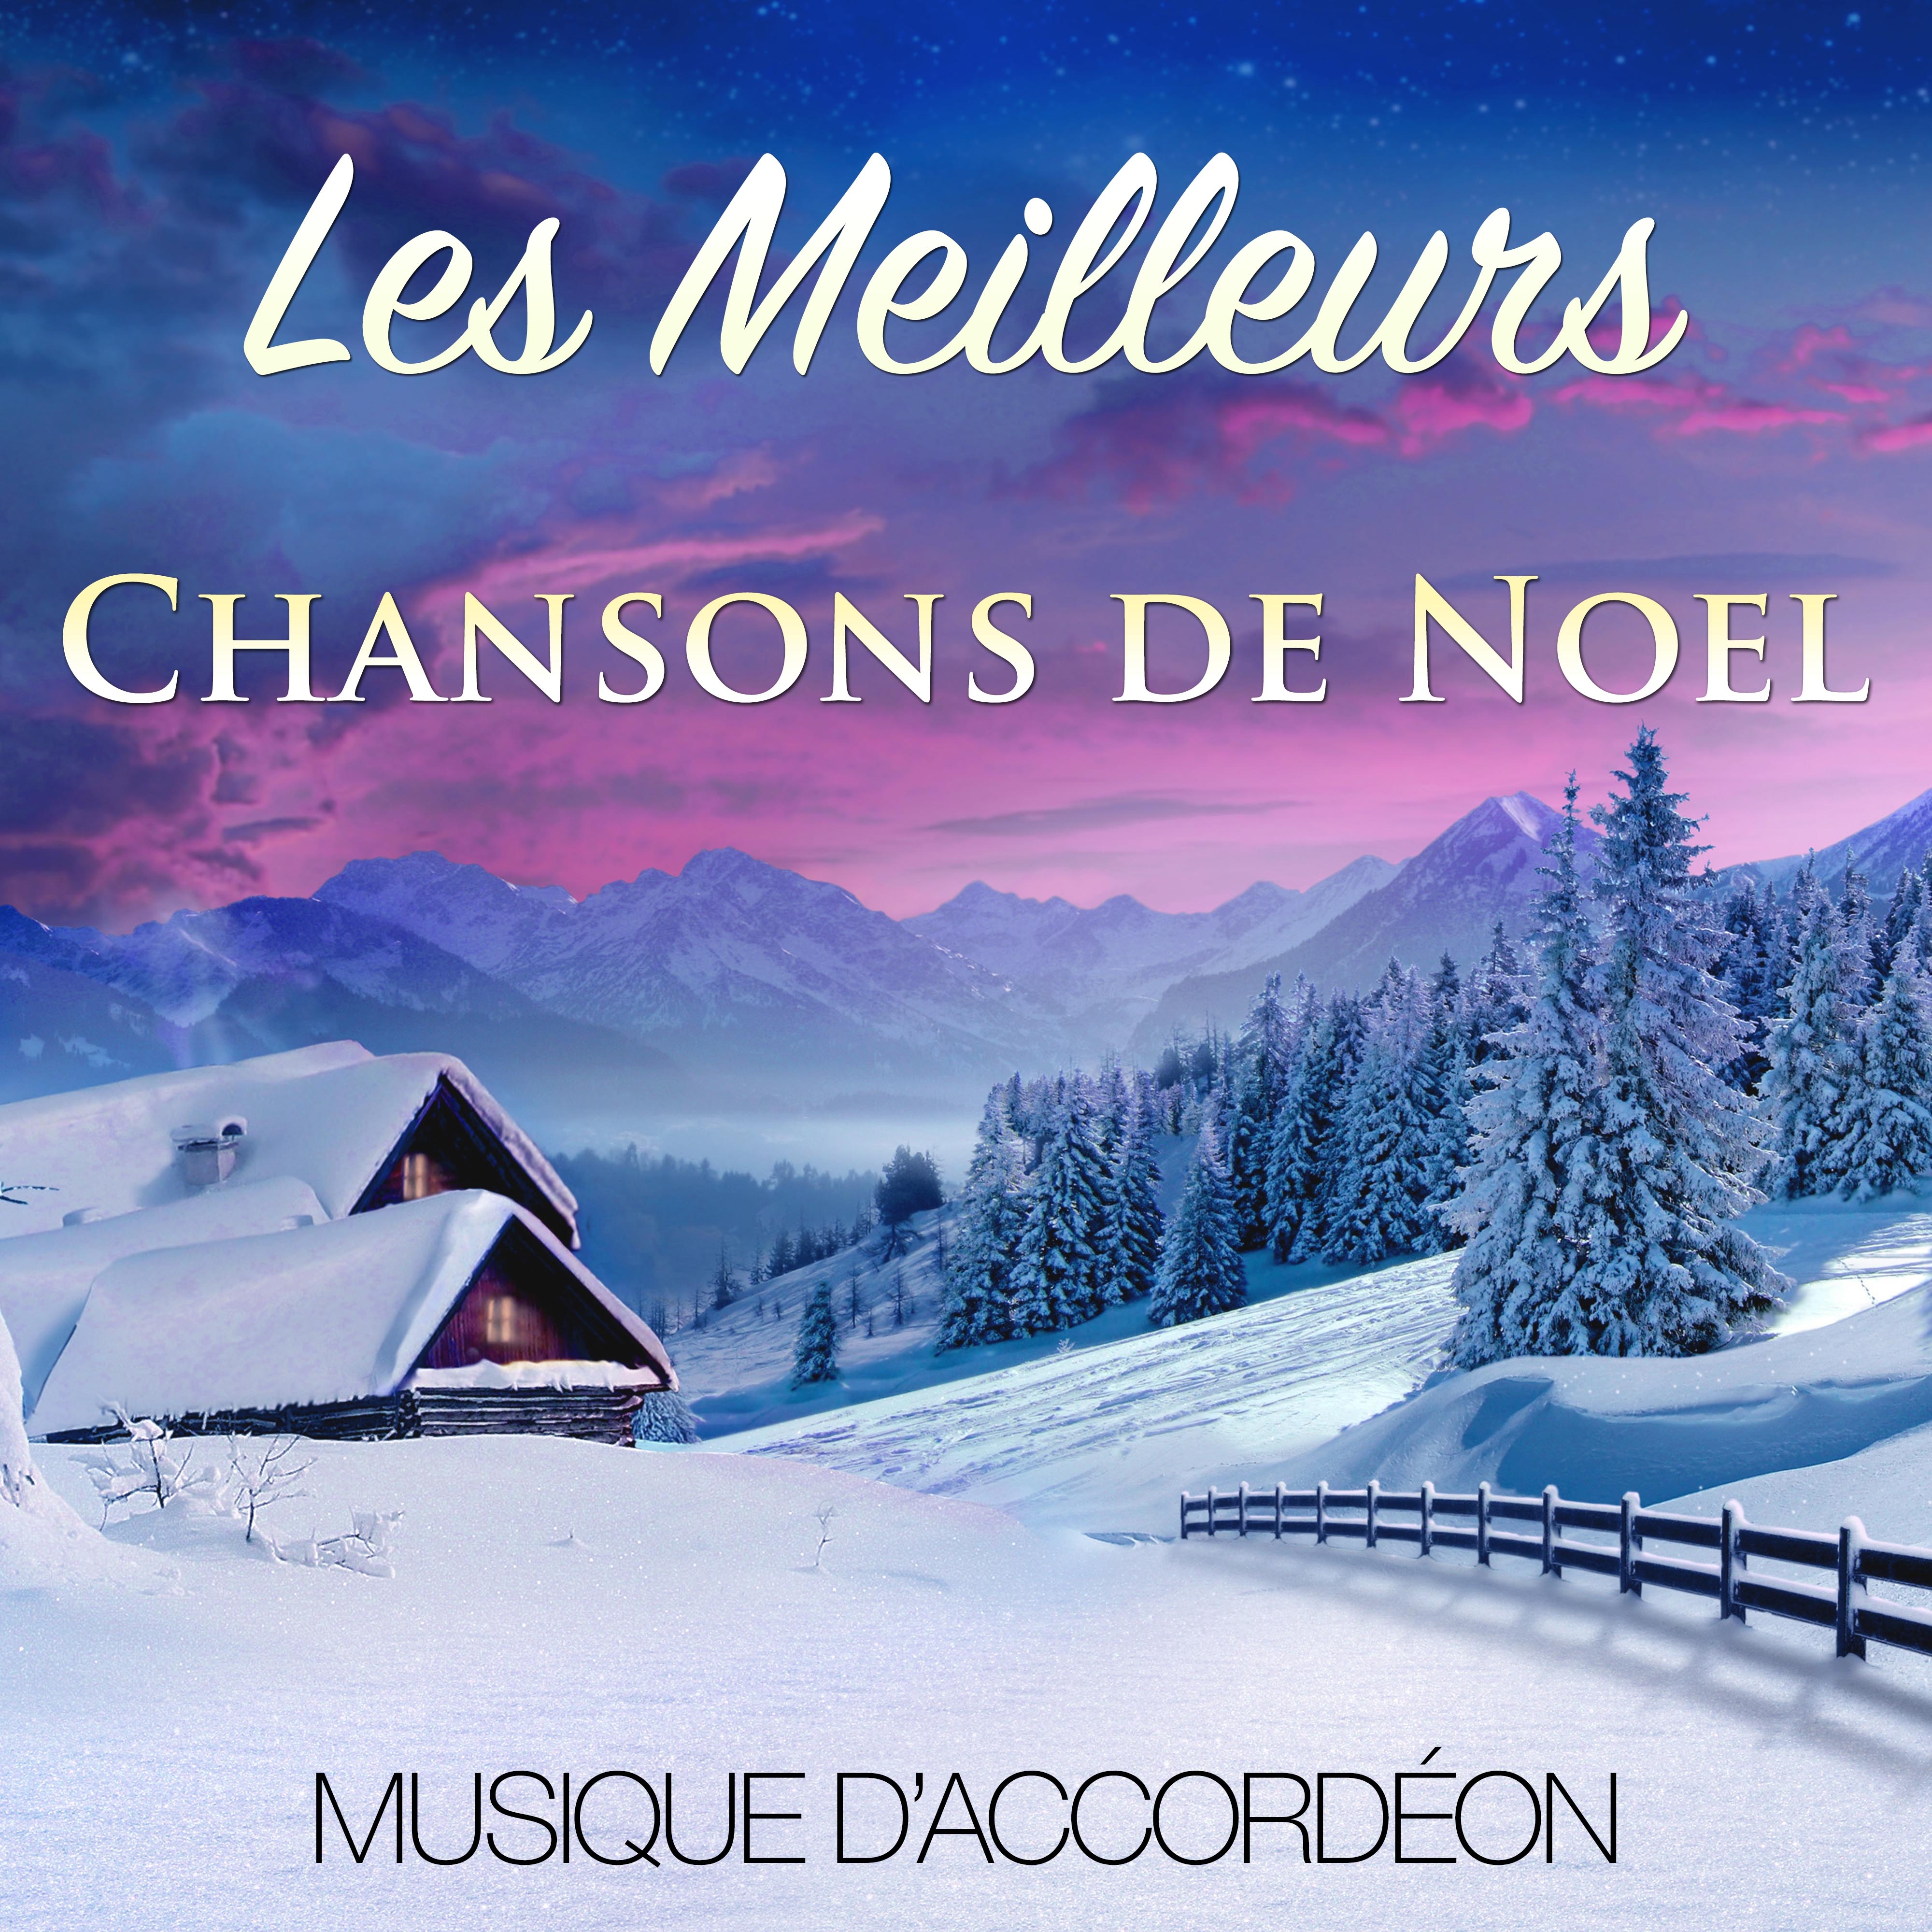 Compilation des Meilleurs Chansons de Noel d' Accorde on pour les Vacances de No l et pour la Famille